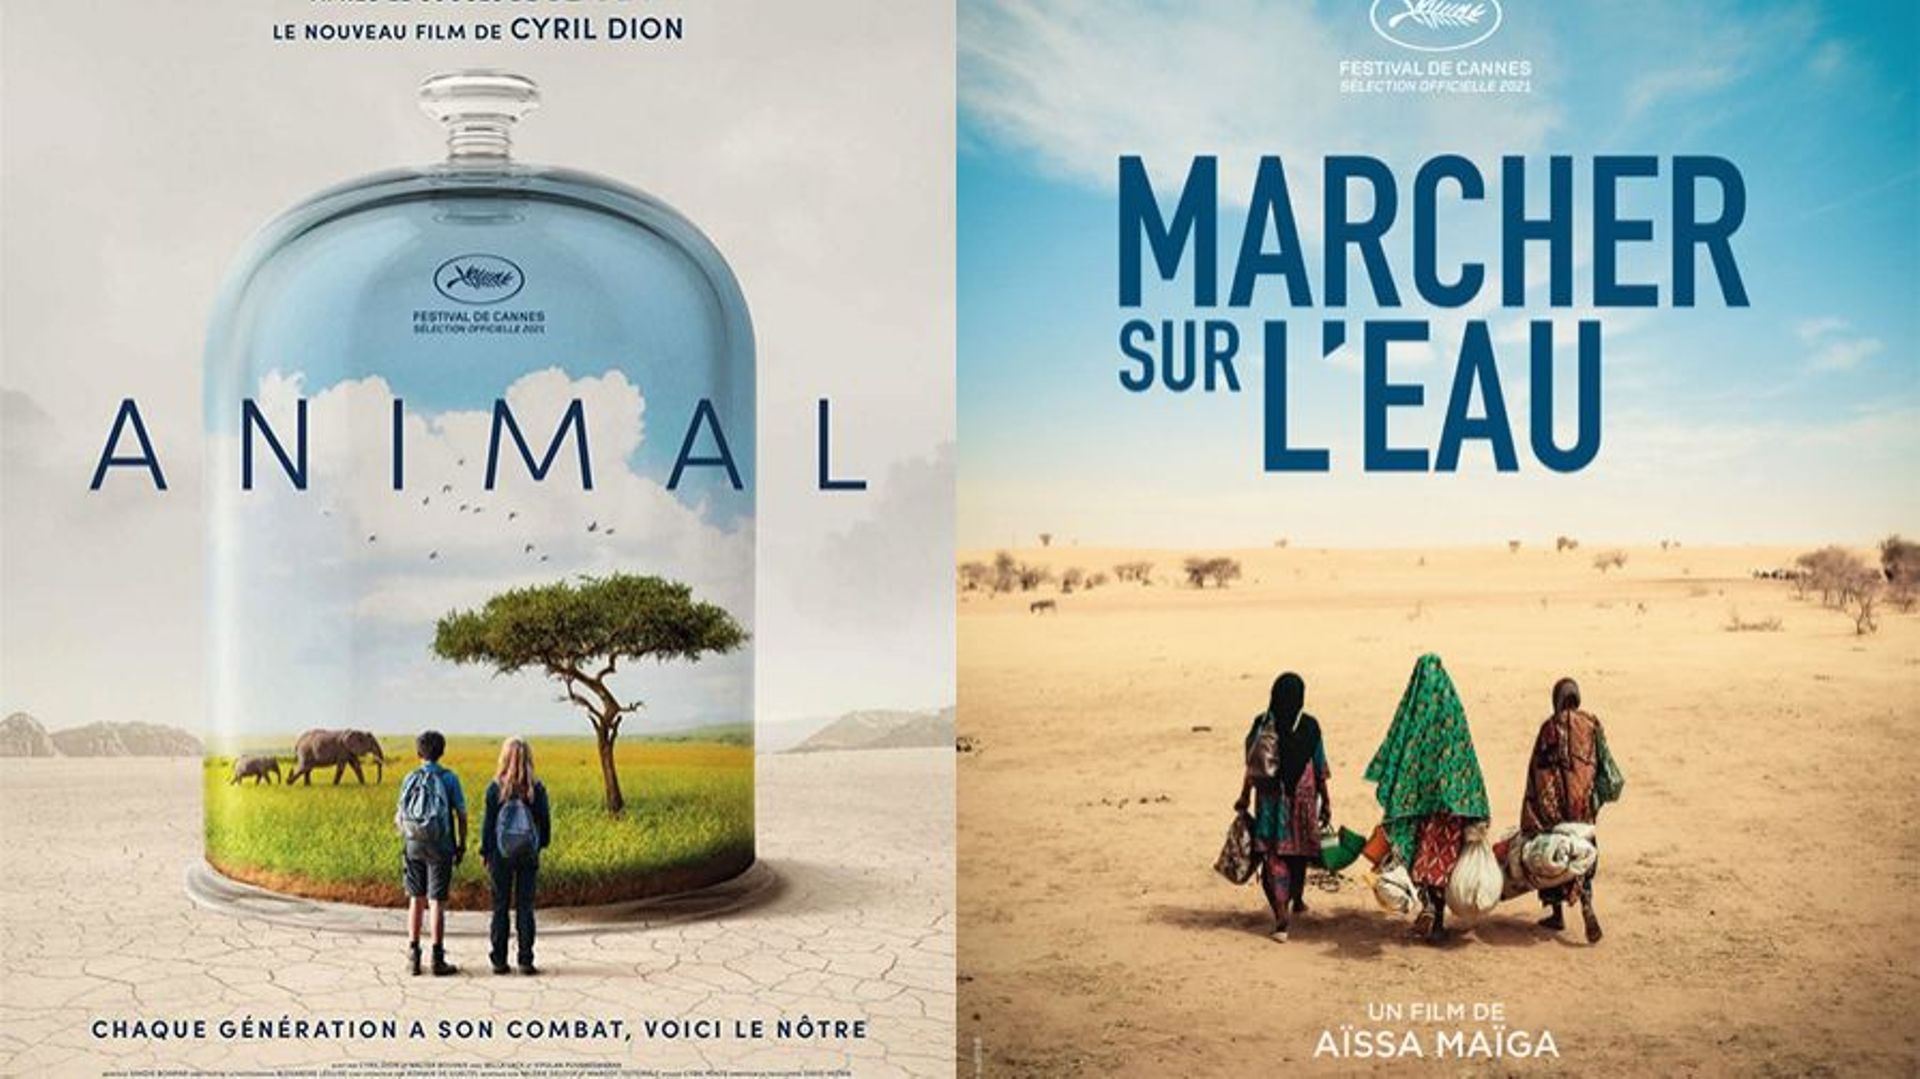 "Animal" de Cyril Dion et "Marcher sur l'eau" d'Aïssa Maïga font partie de la "sélection éphémère" spéciale climat du Festival de Cannes.